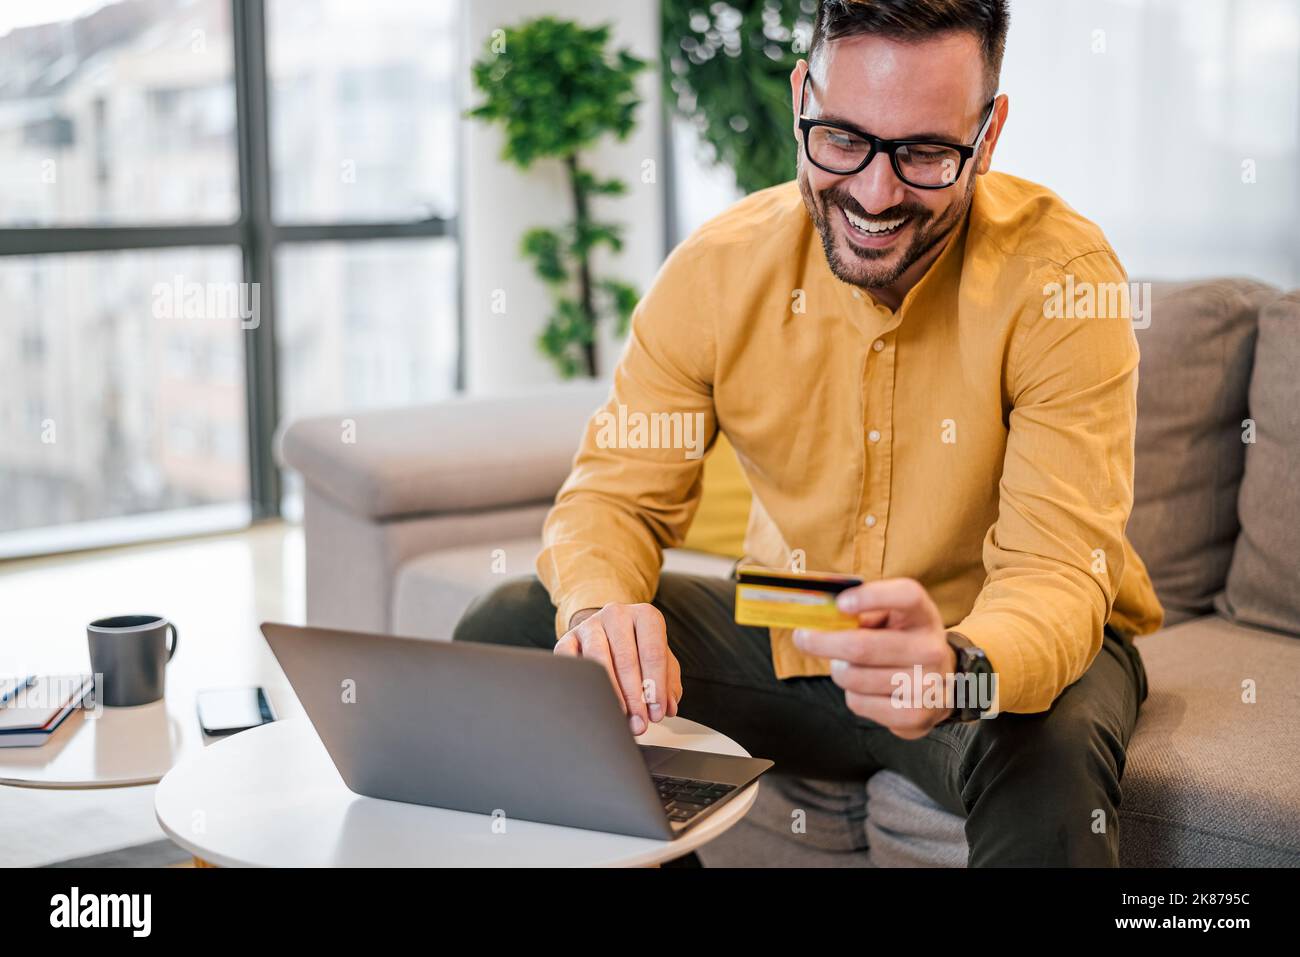 Ravi beau homme adulte avec des lunettes, souriant et lisant le numéro sur sa carte de crédit, à la maison. Banque D'Images